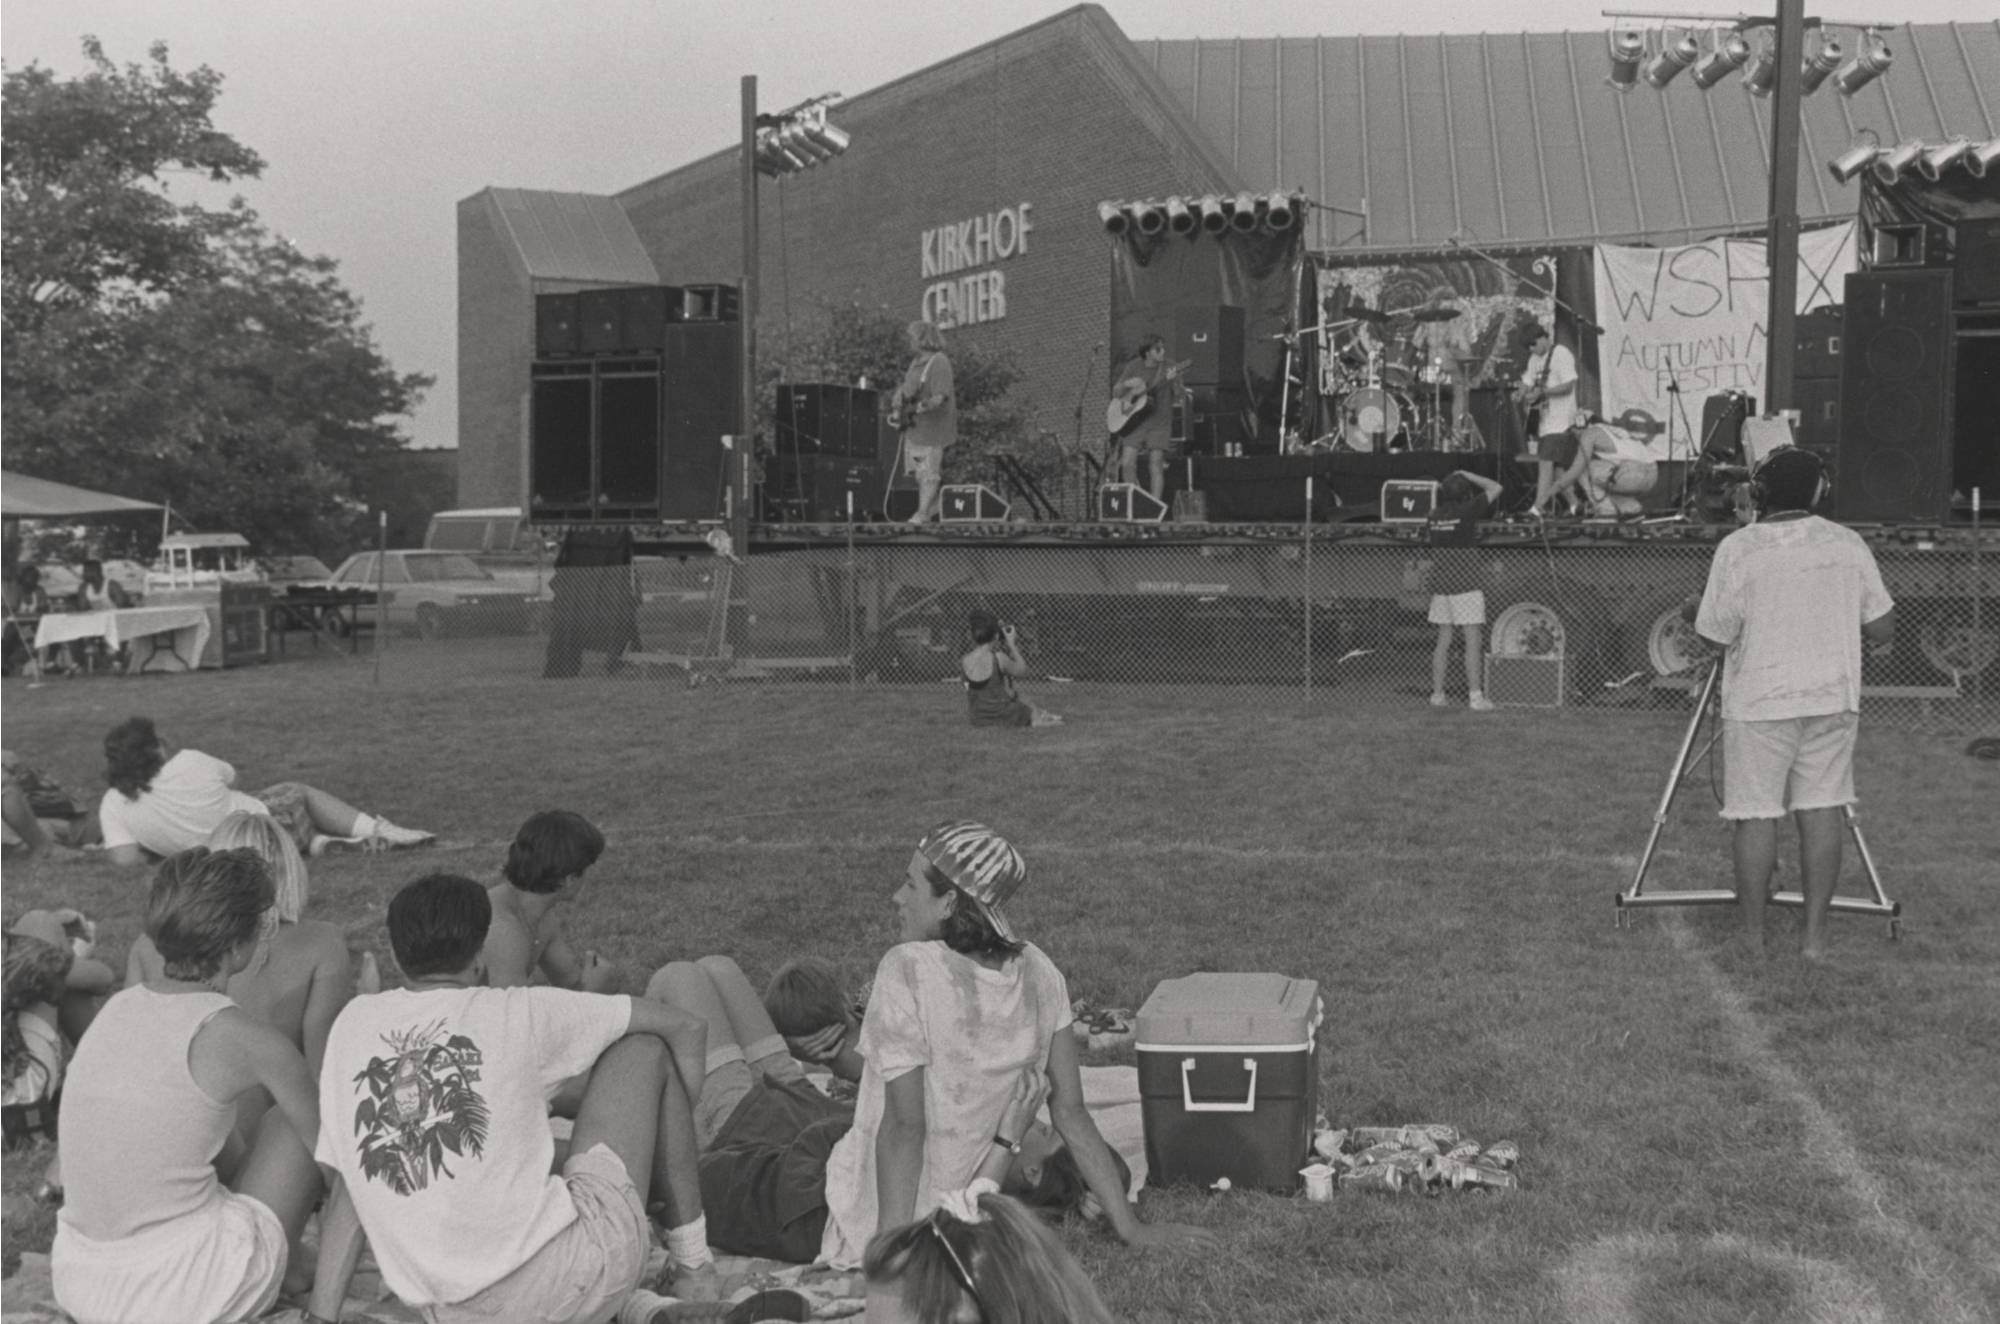 WSRX Autumn Music Festival at Kirkhof Center, August 27, 1991.